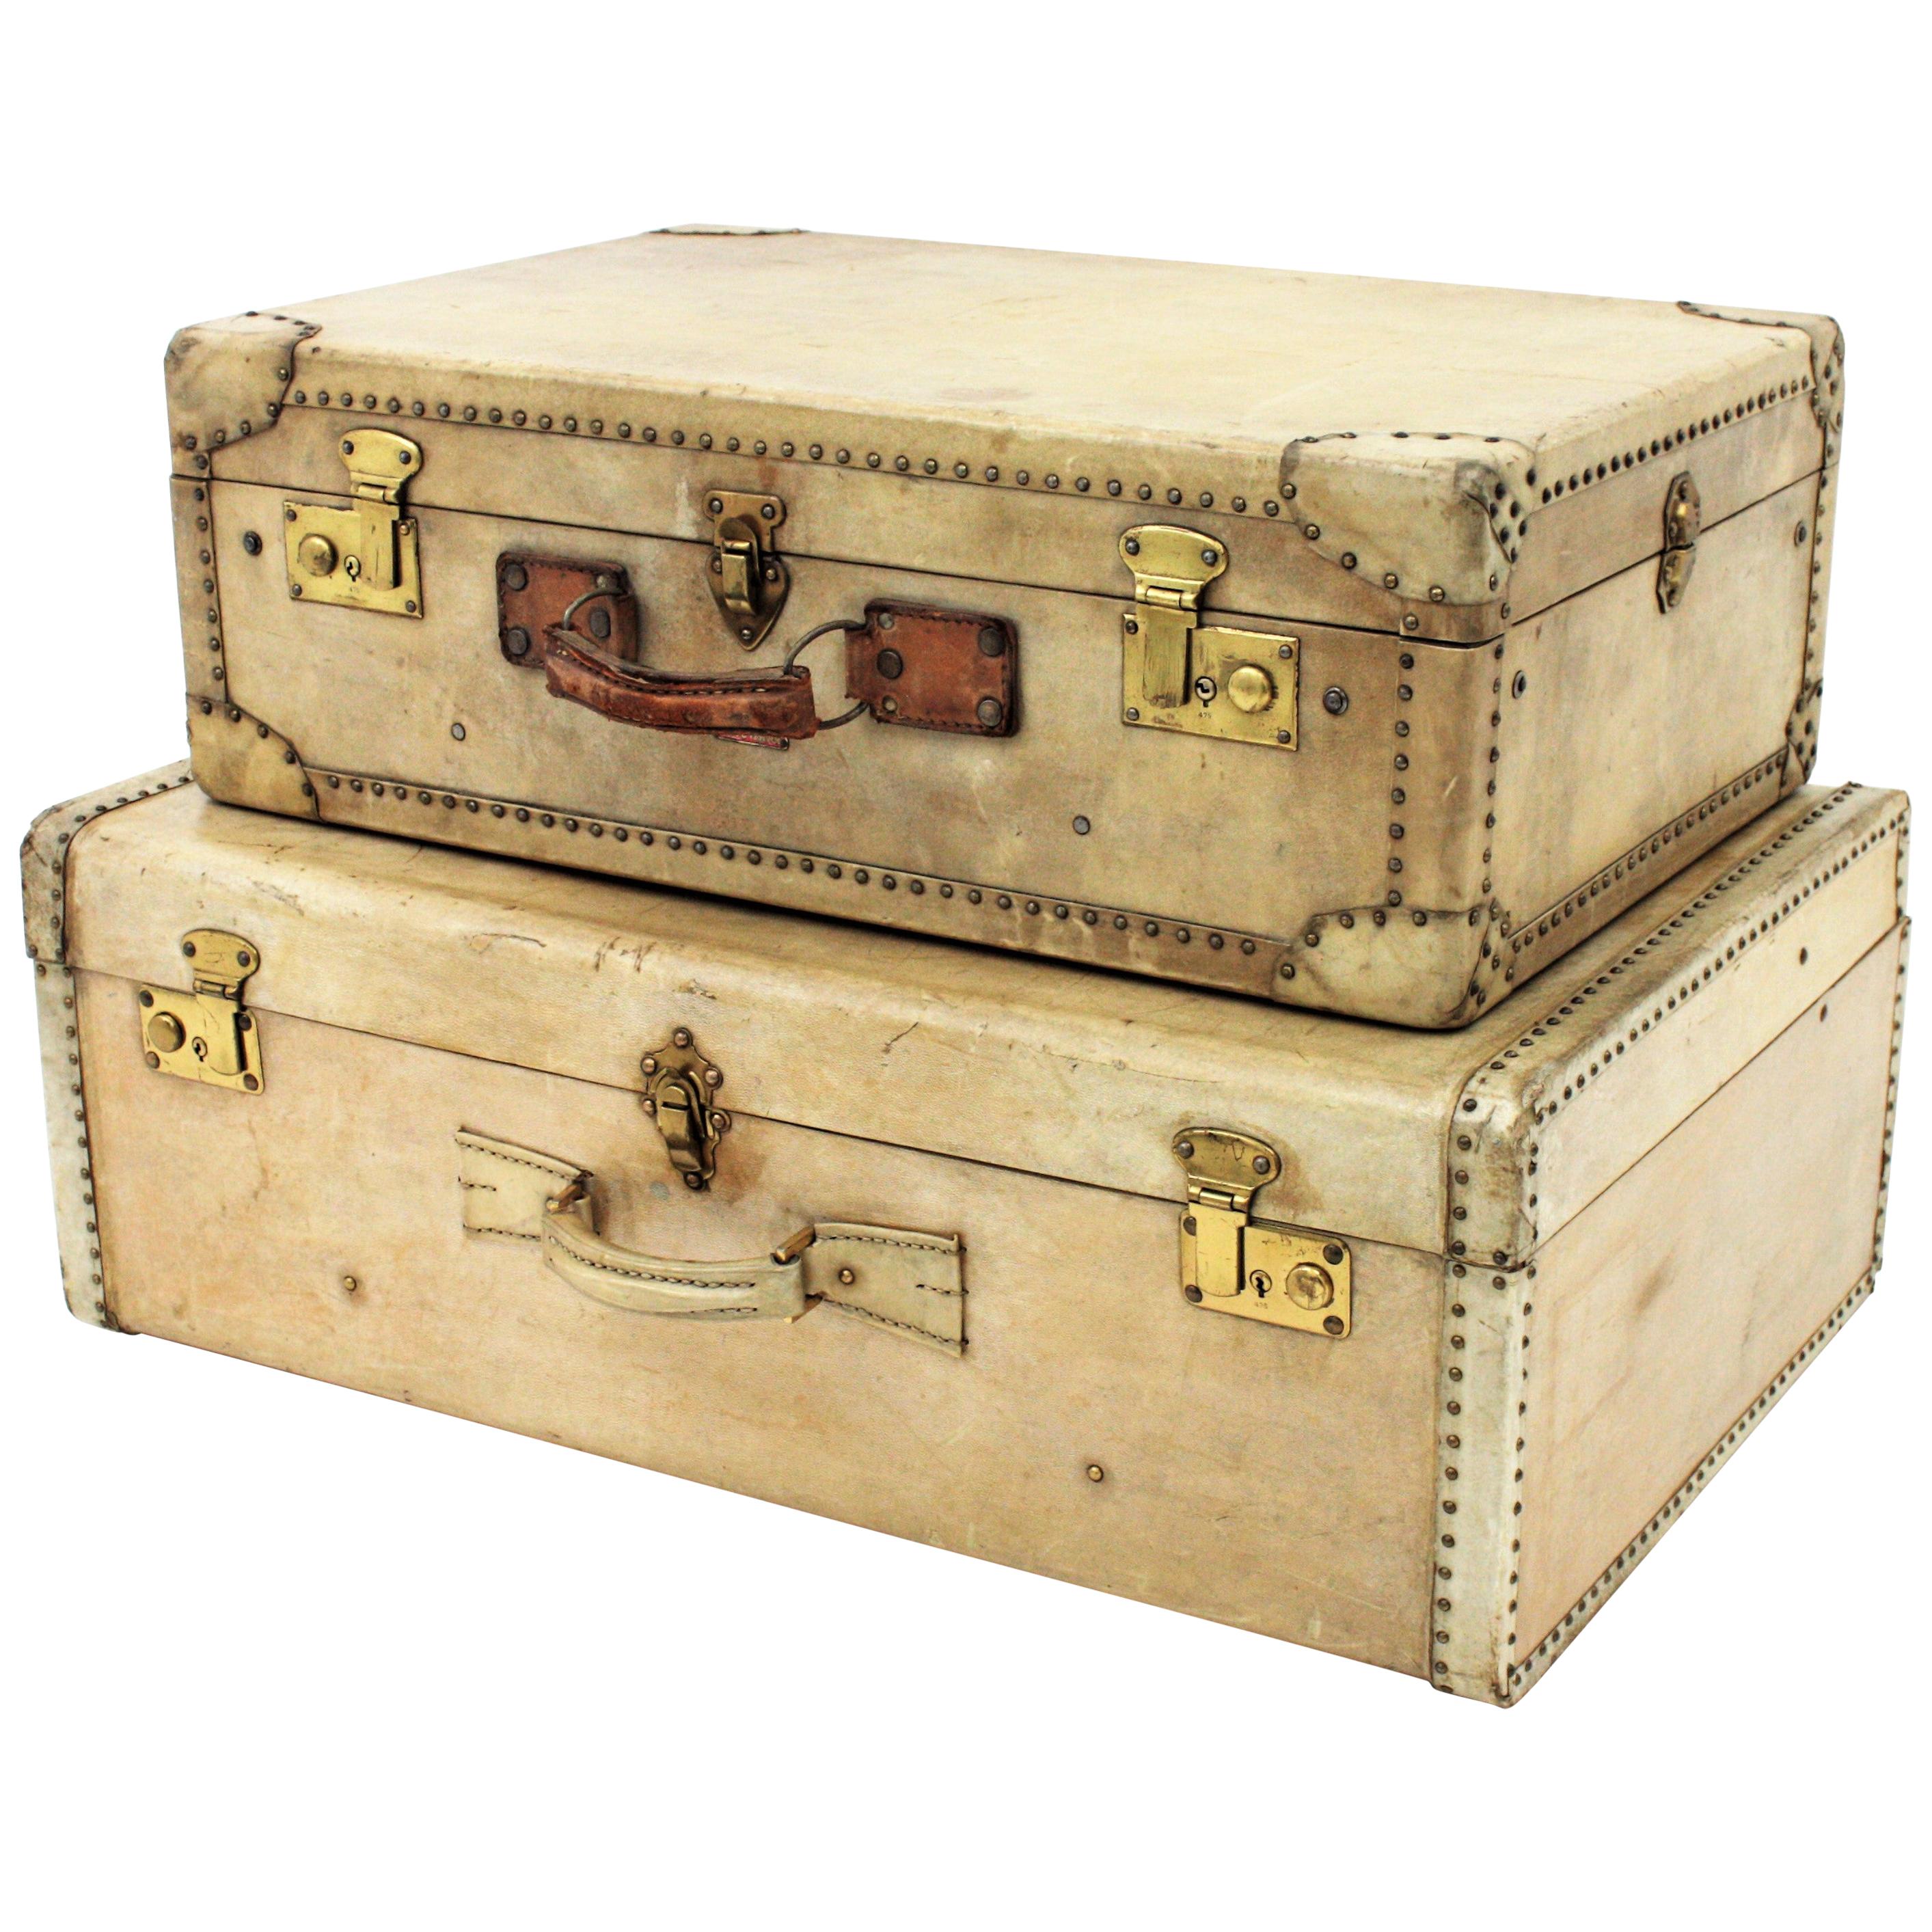 Un ensemble de valises en vélin de luxe français de haute qualité. France, années 1920-1930.
Fabriqué en bois et en parchemin avec des clous et des plaques de serrure en laiton et des poignées en cuir.
Celui du haut a été fabriqué par